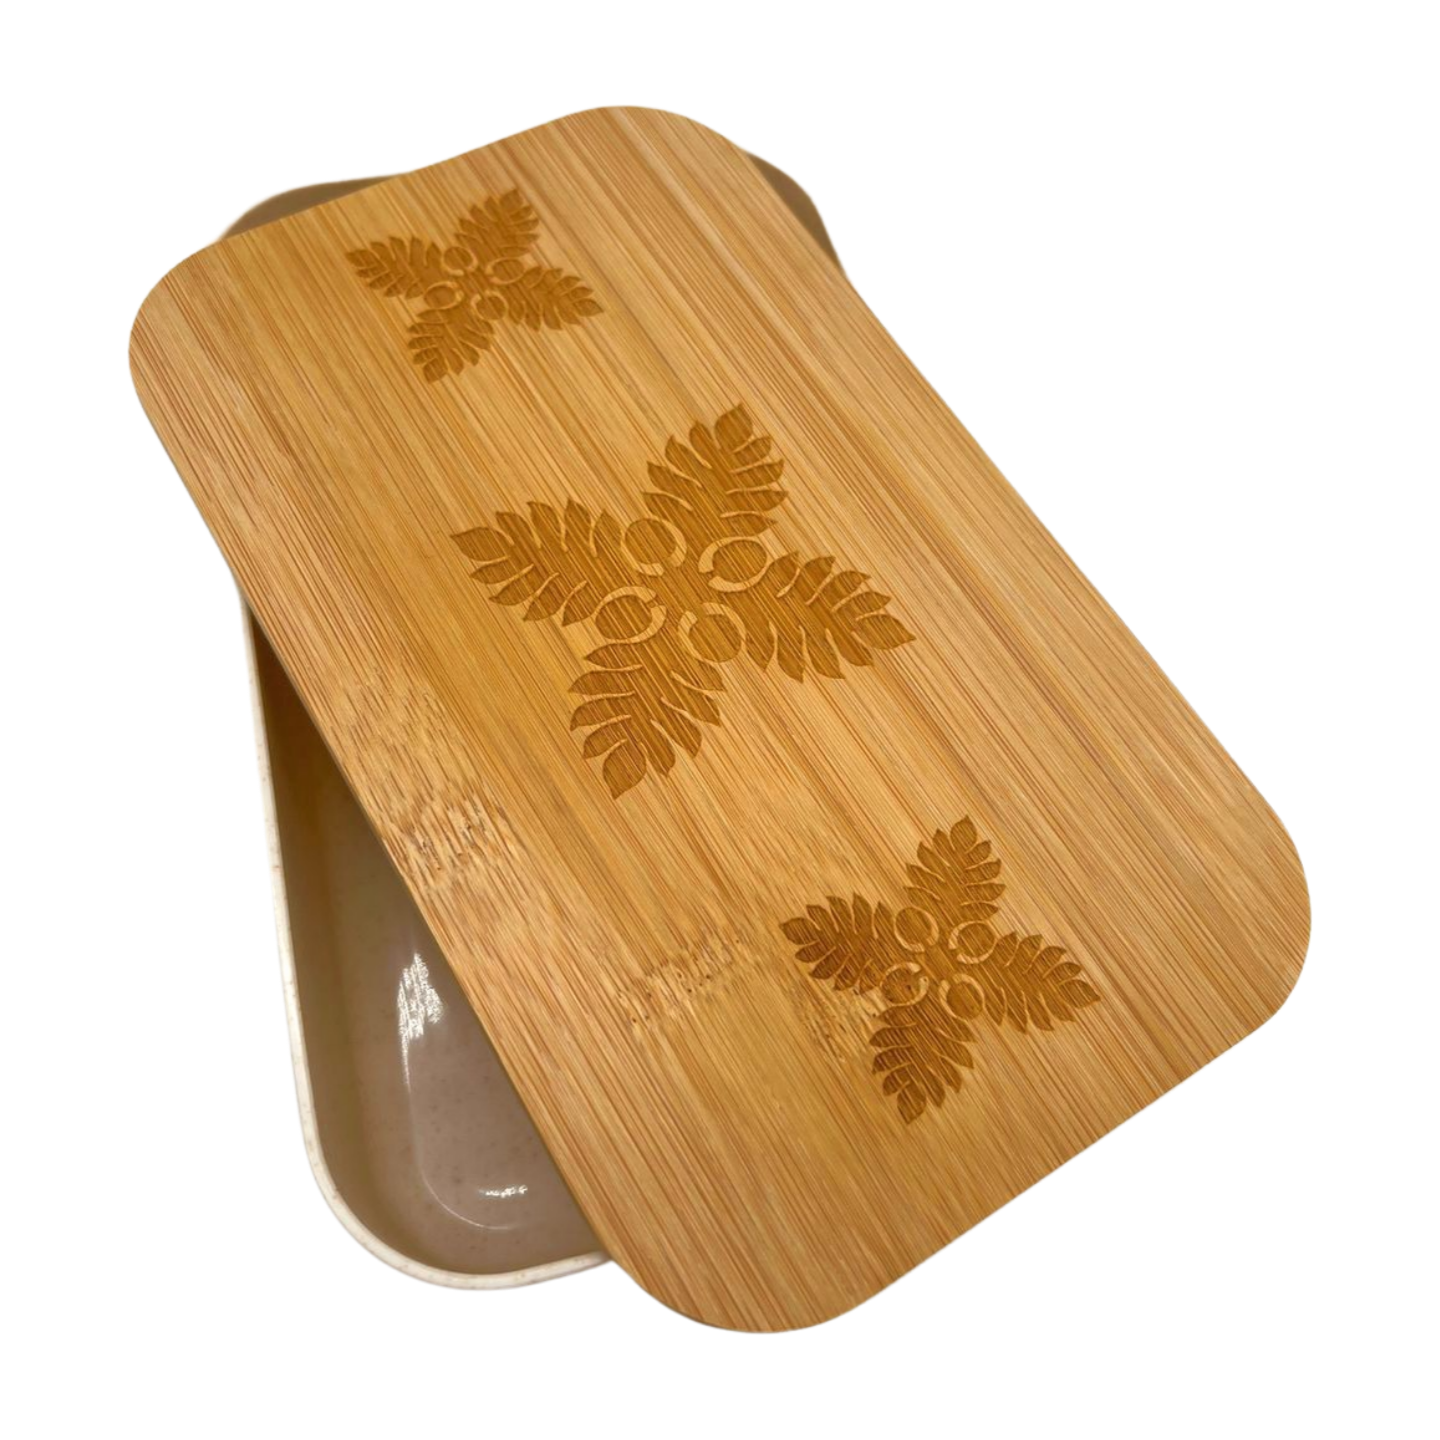 Pop-Up Mākeke - She Wood Go - Musubento (Bento Boxes with Utensils) - ʻUlu - Open View